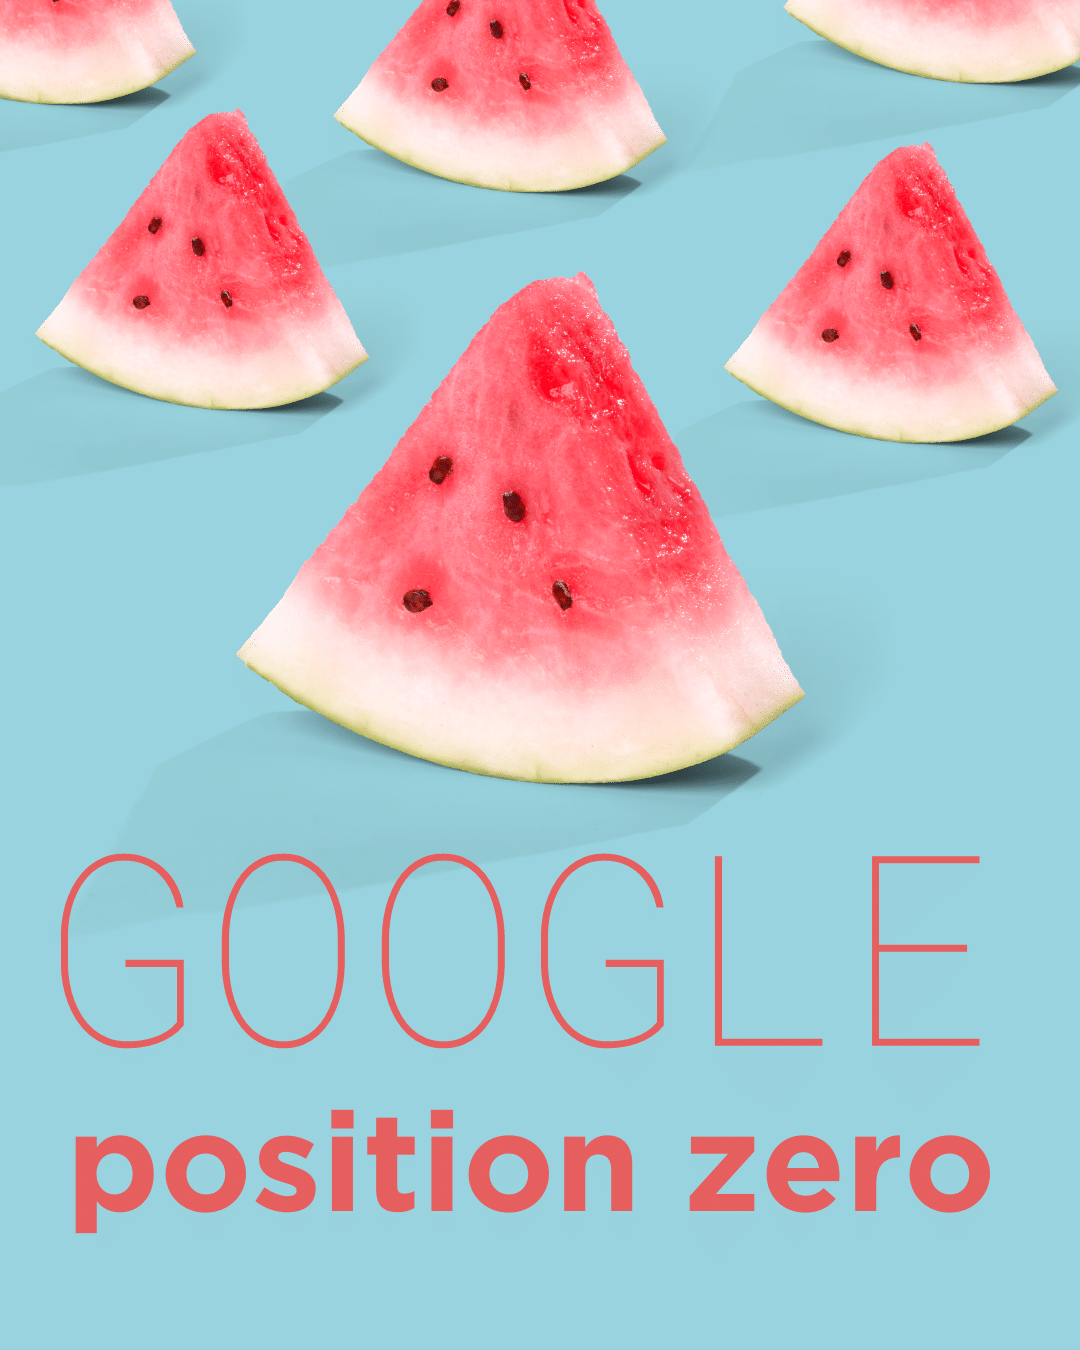 Google position zero